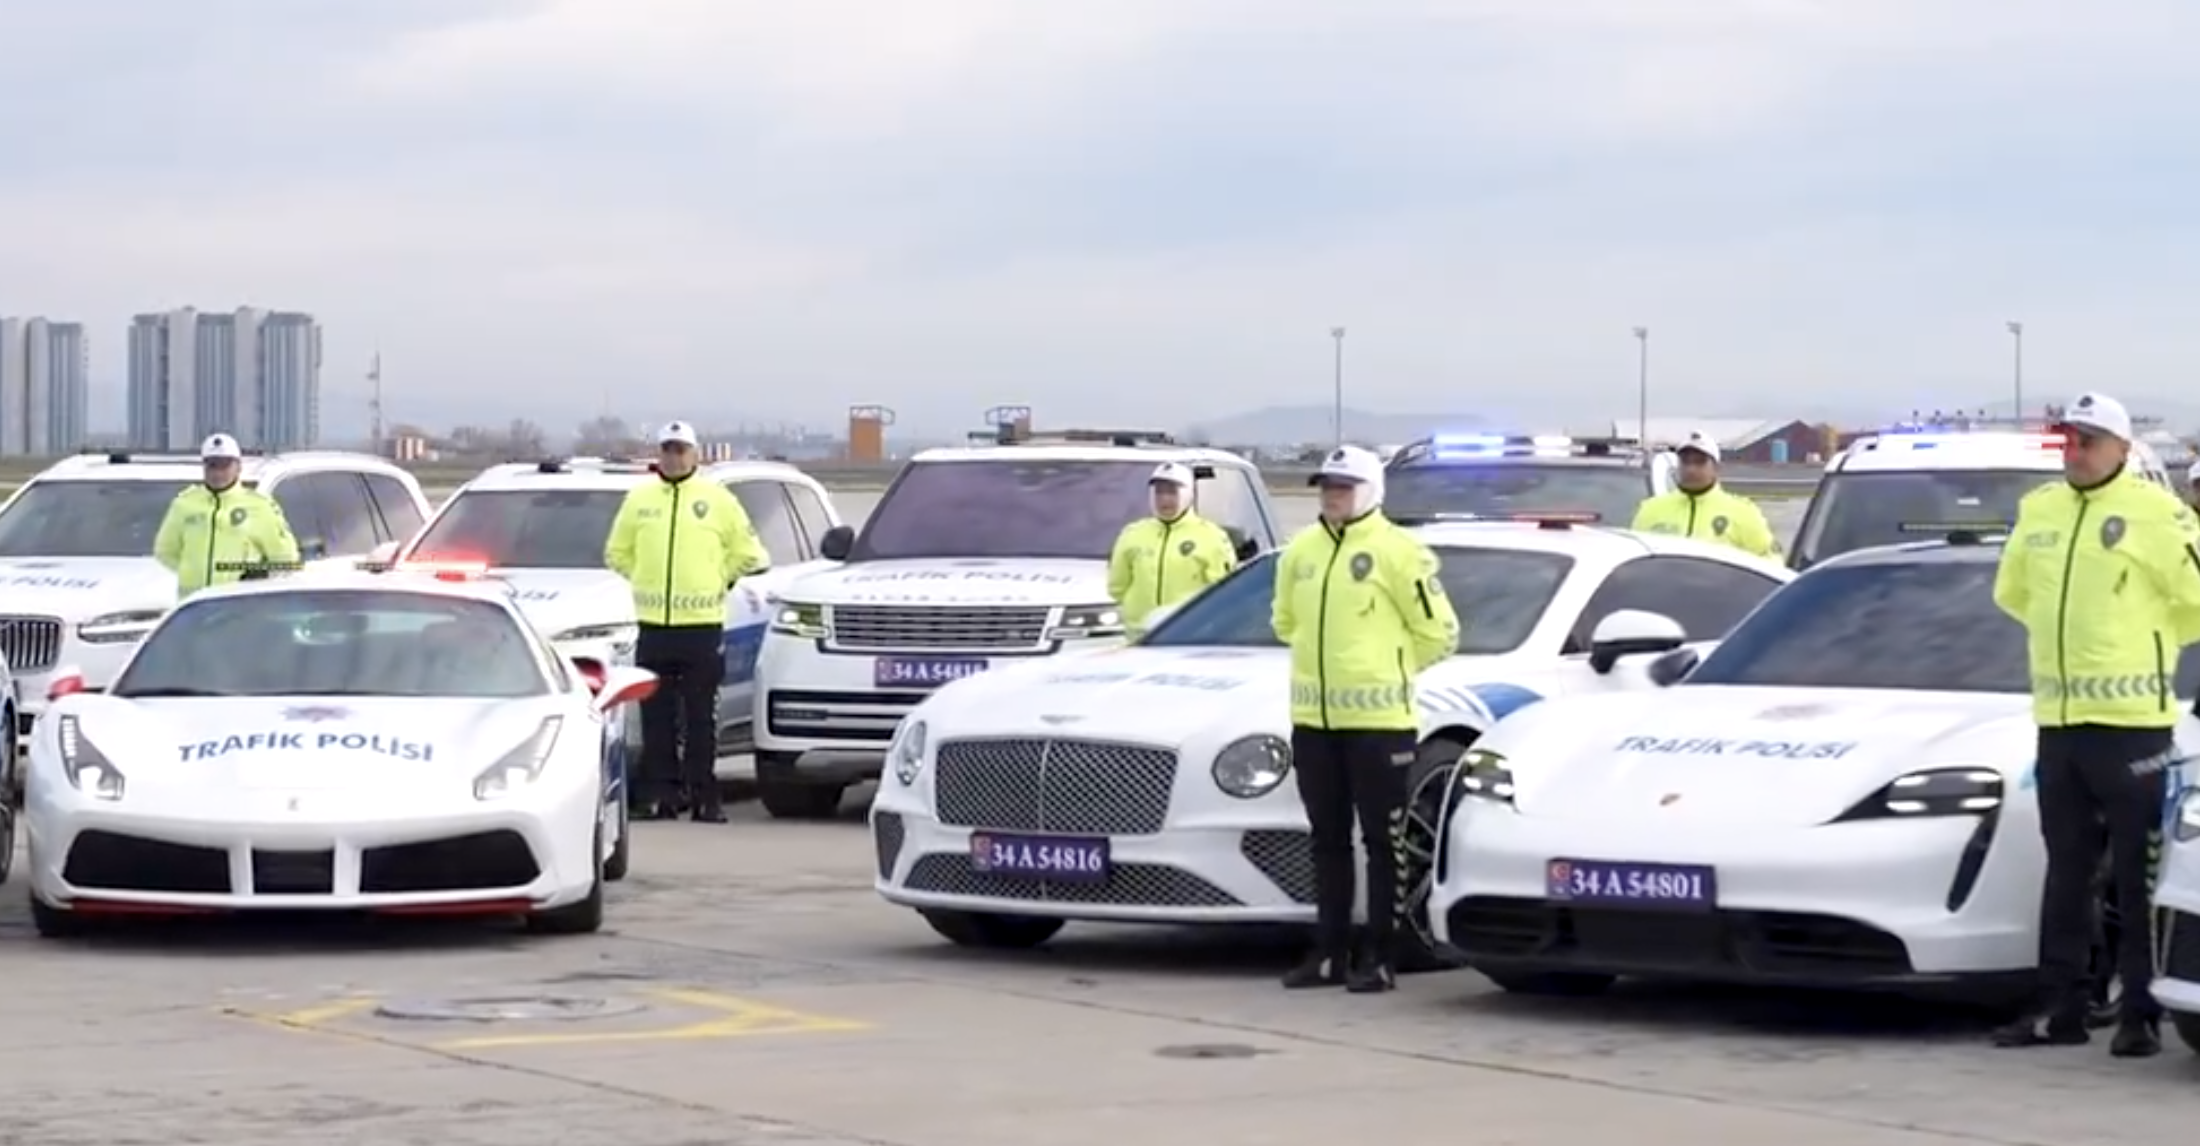 У турецкой полиции безумный парк конфискованных высококлассных автомобилей стоимостью 3,5 миллиона долларов